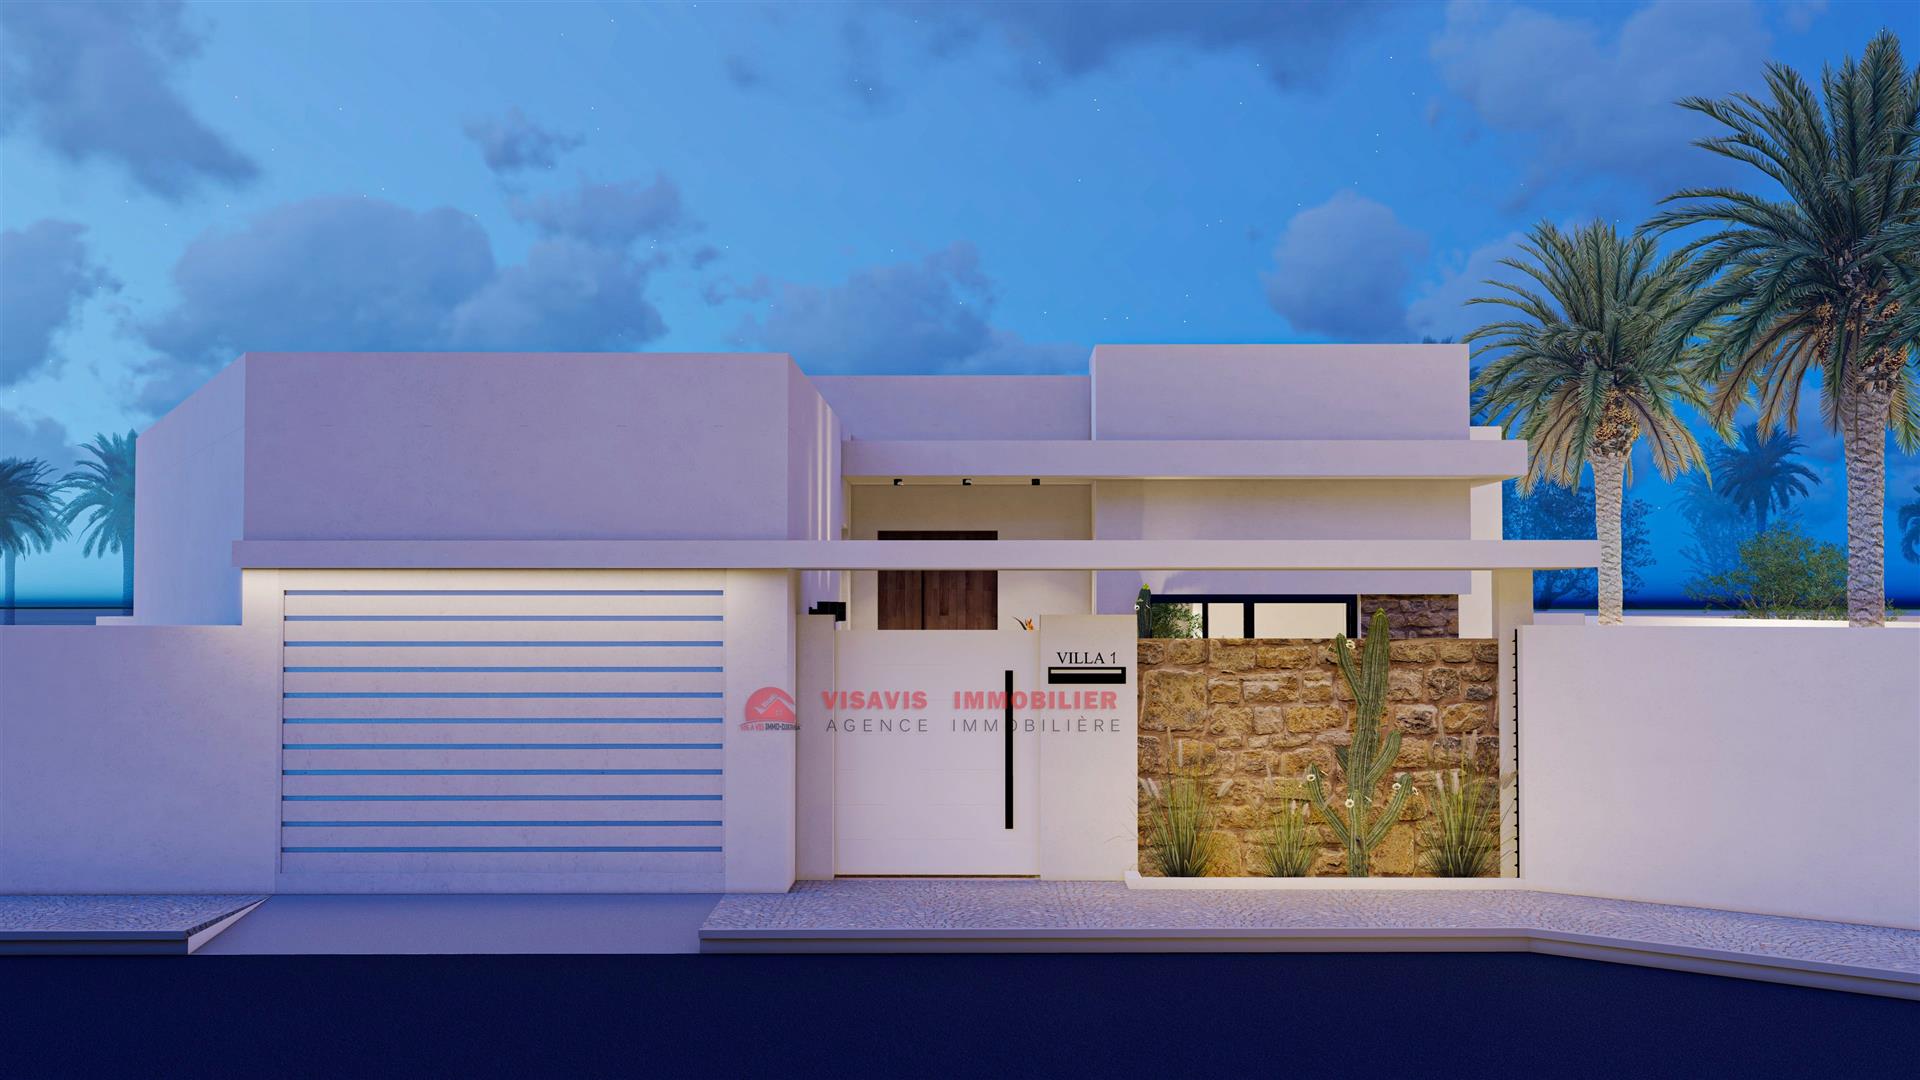 Модель плана одноэтажного дома на Джербе - Ref P625